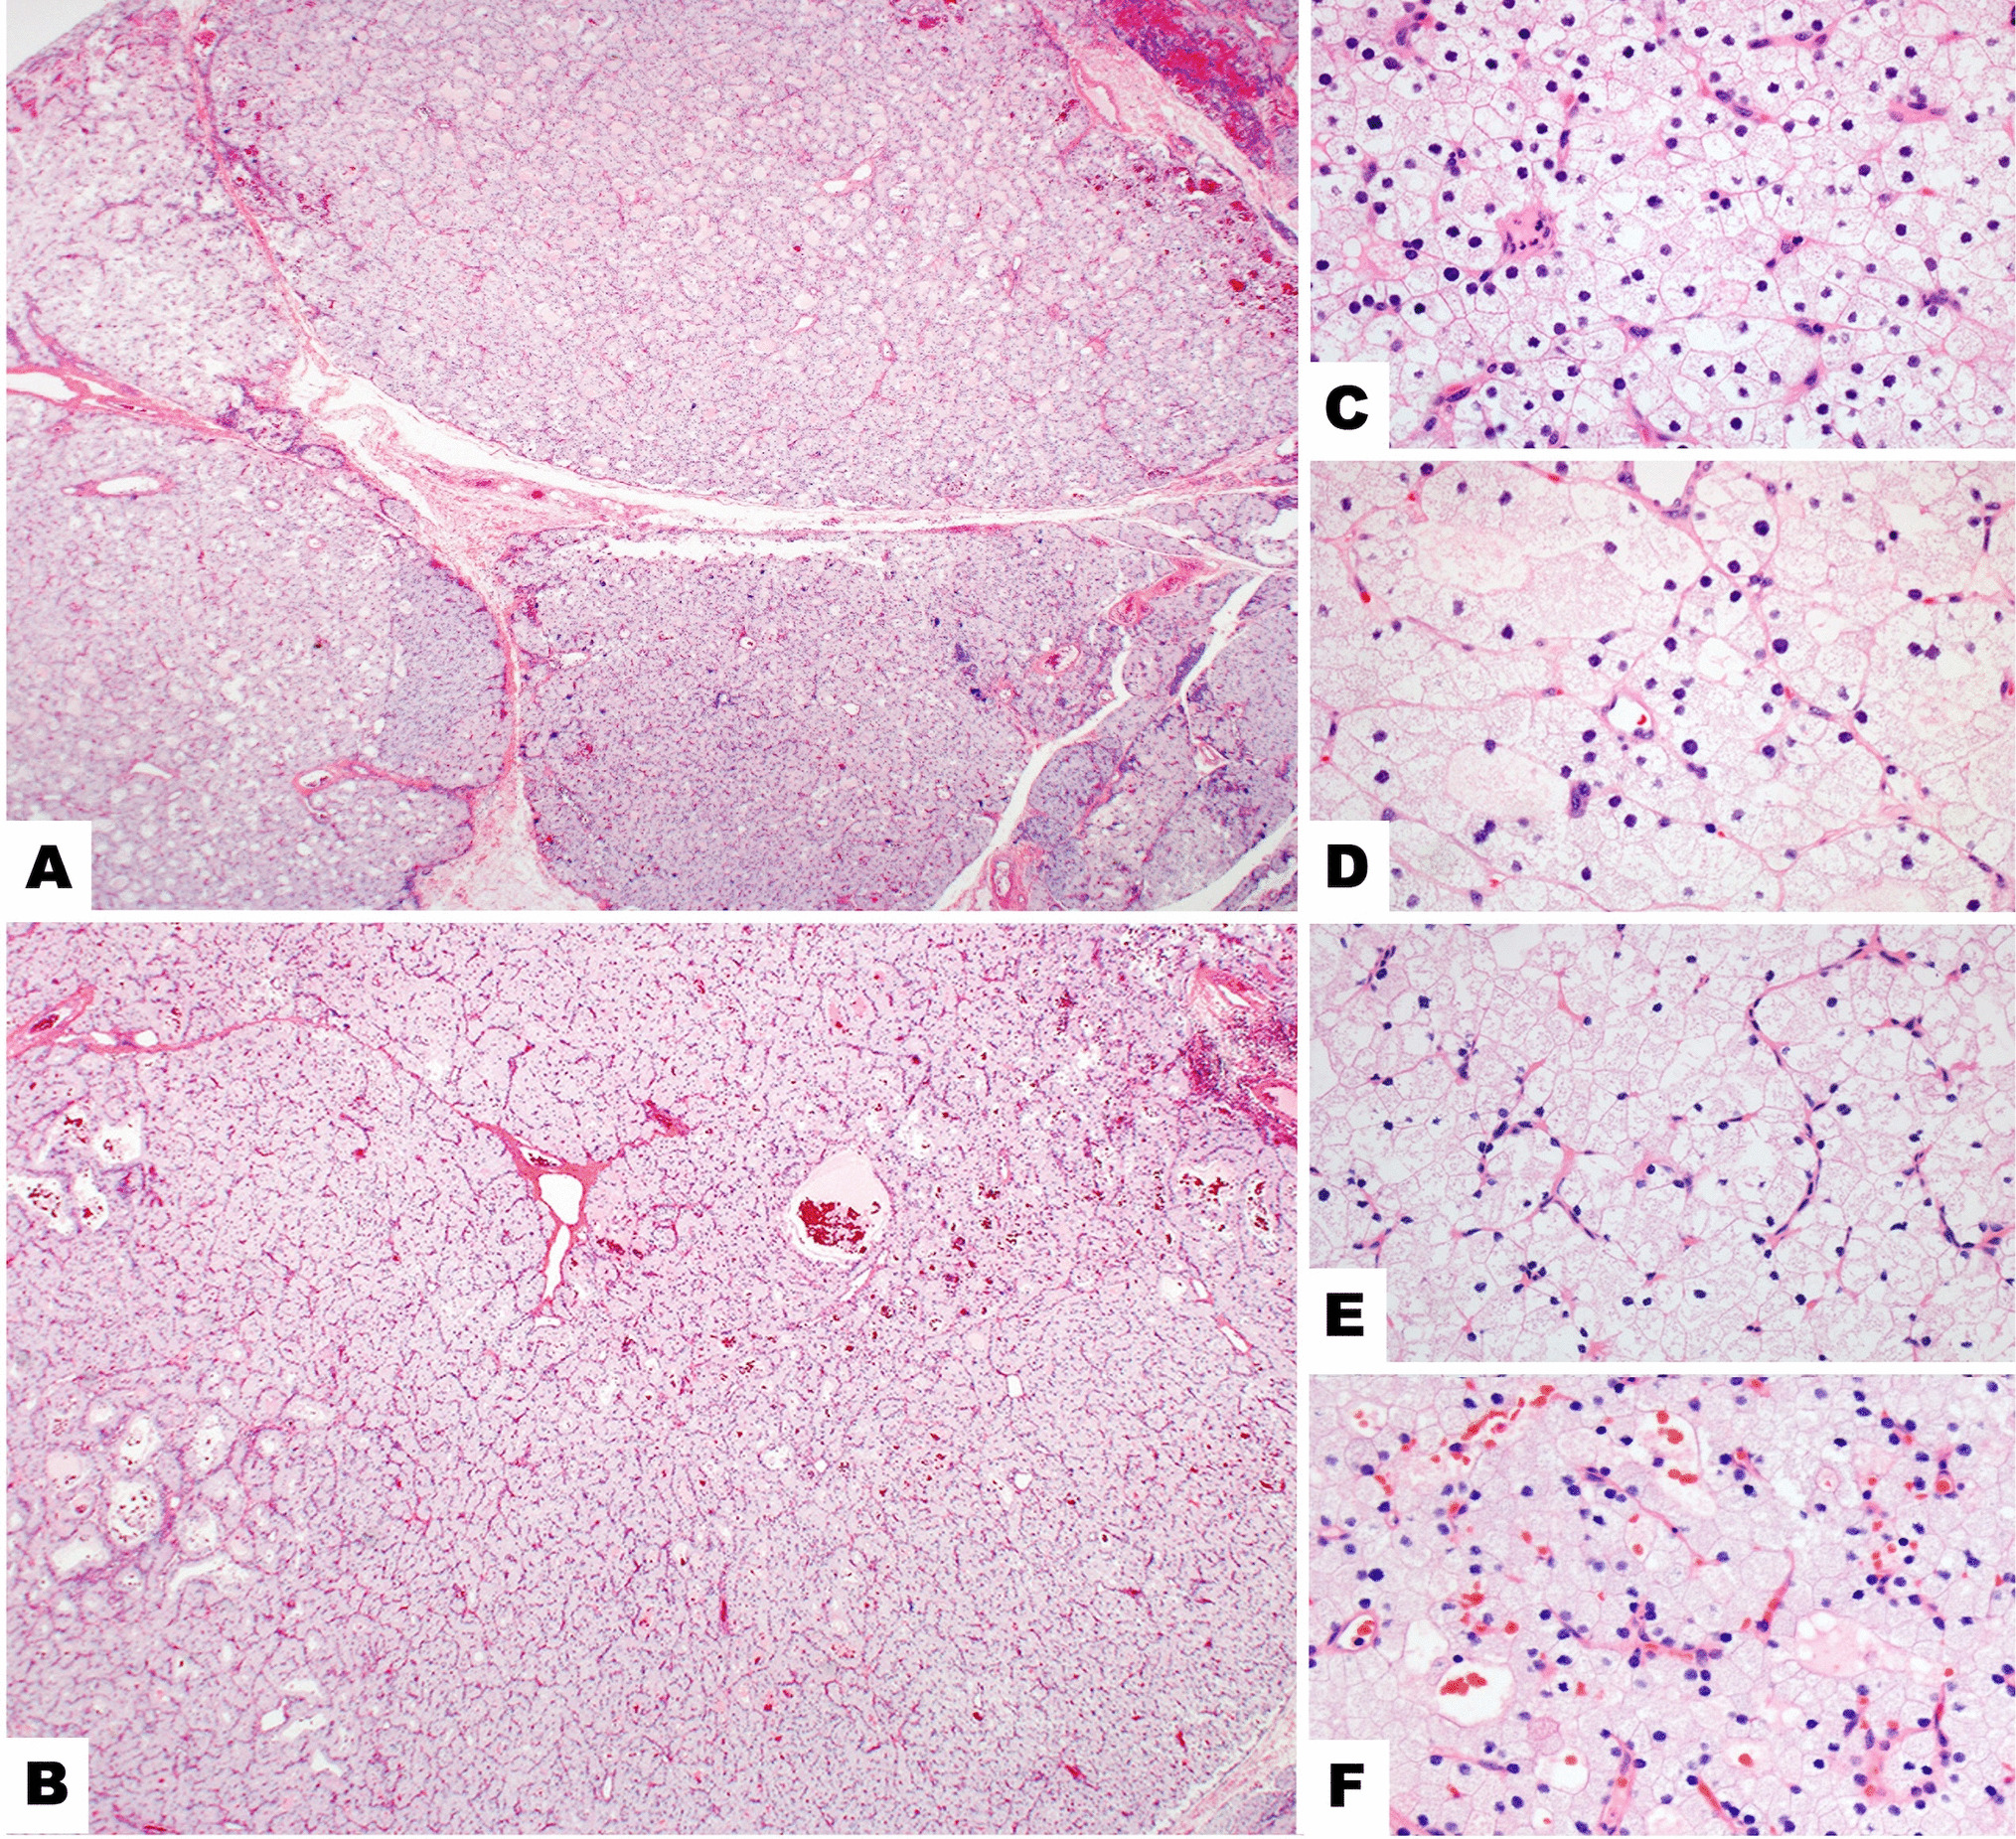 Primary Multiglandular Parathyroid Disease in the Setting of Pompe Disease